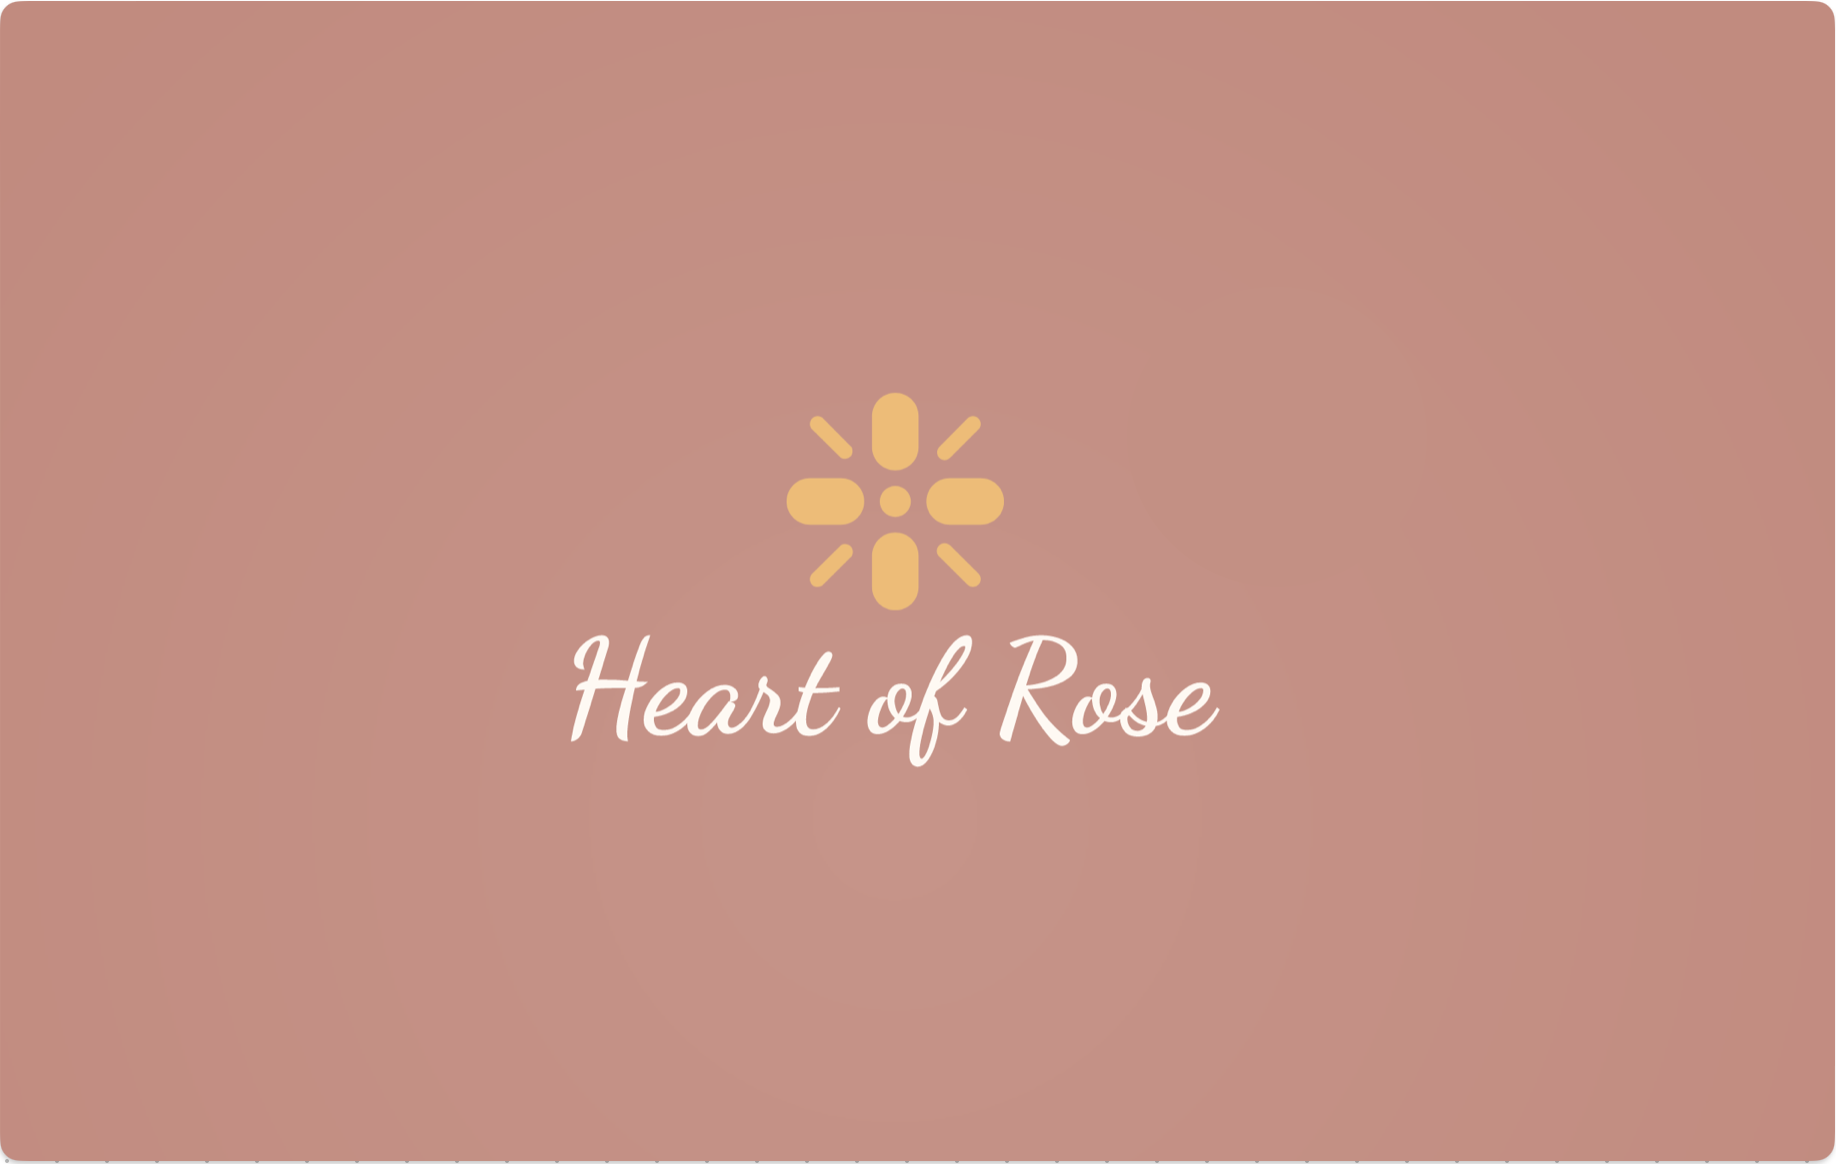 Heart of Rose